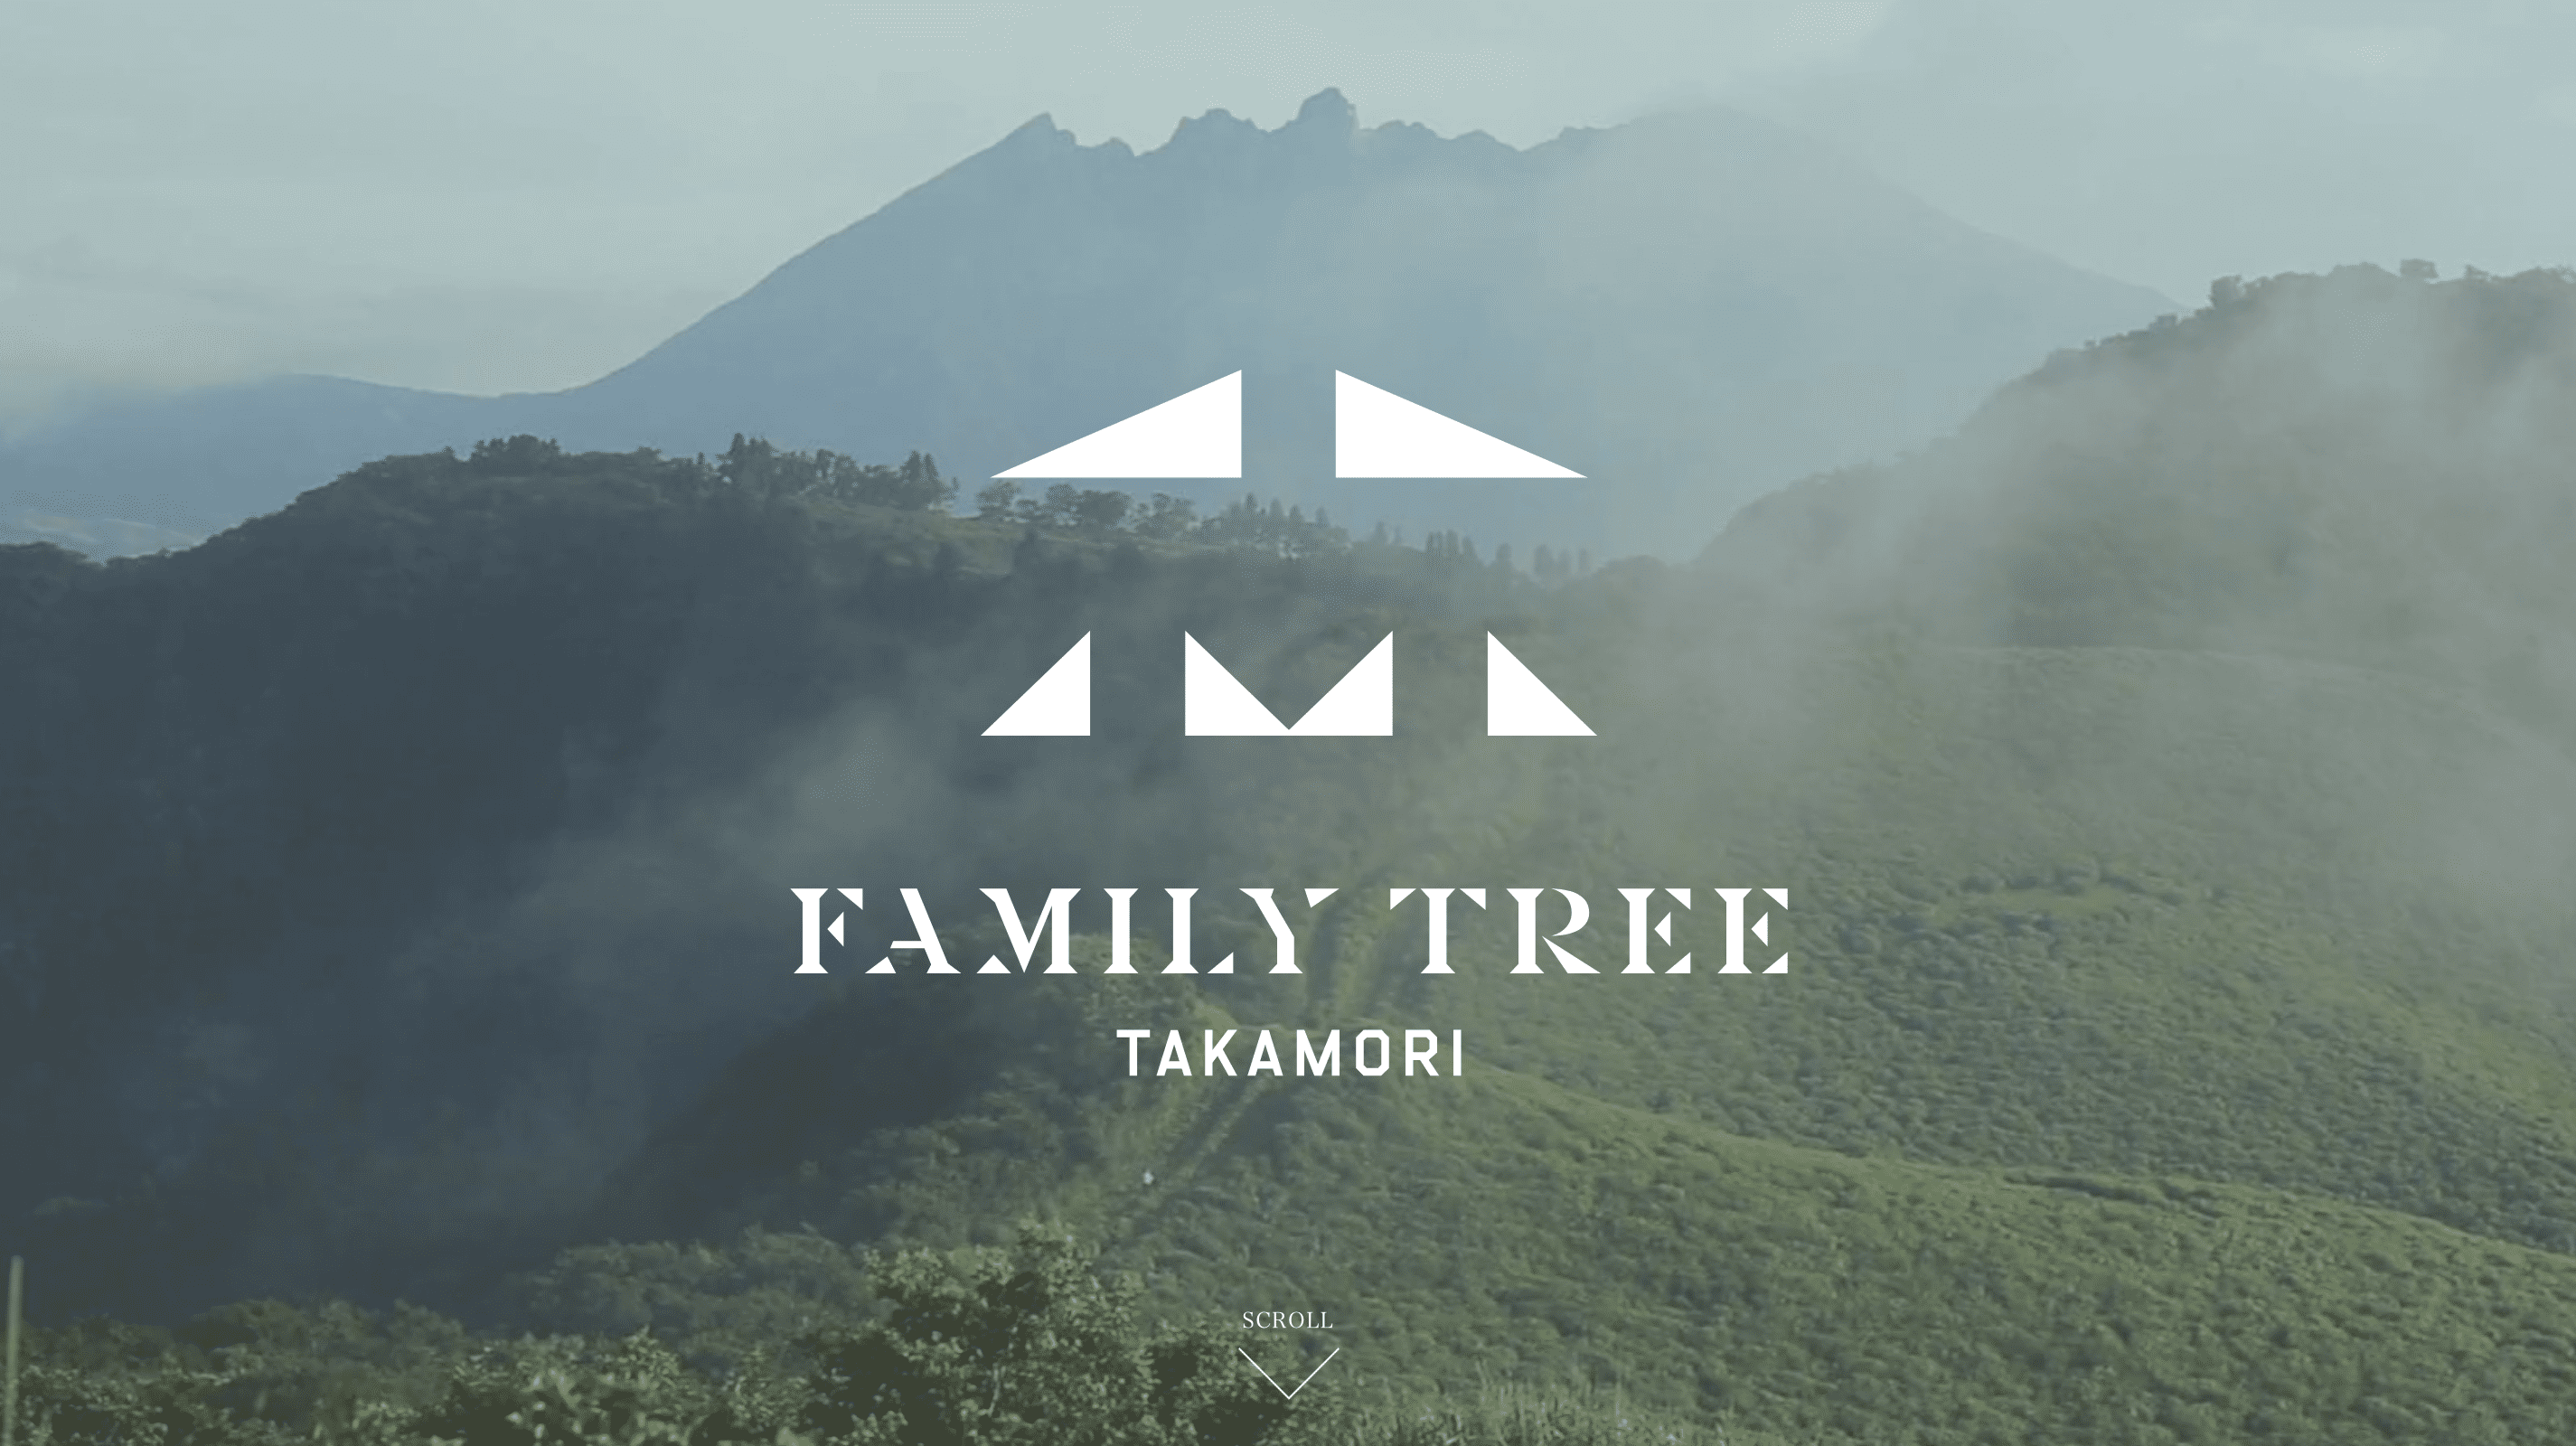 FAMILY TREE TAKAMORI